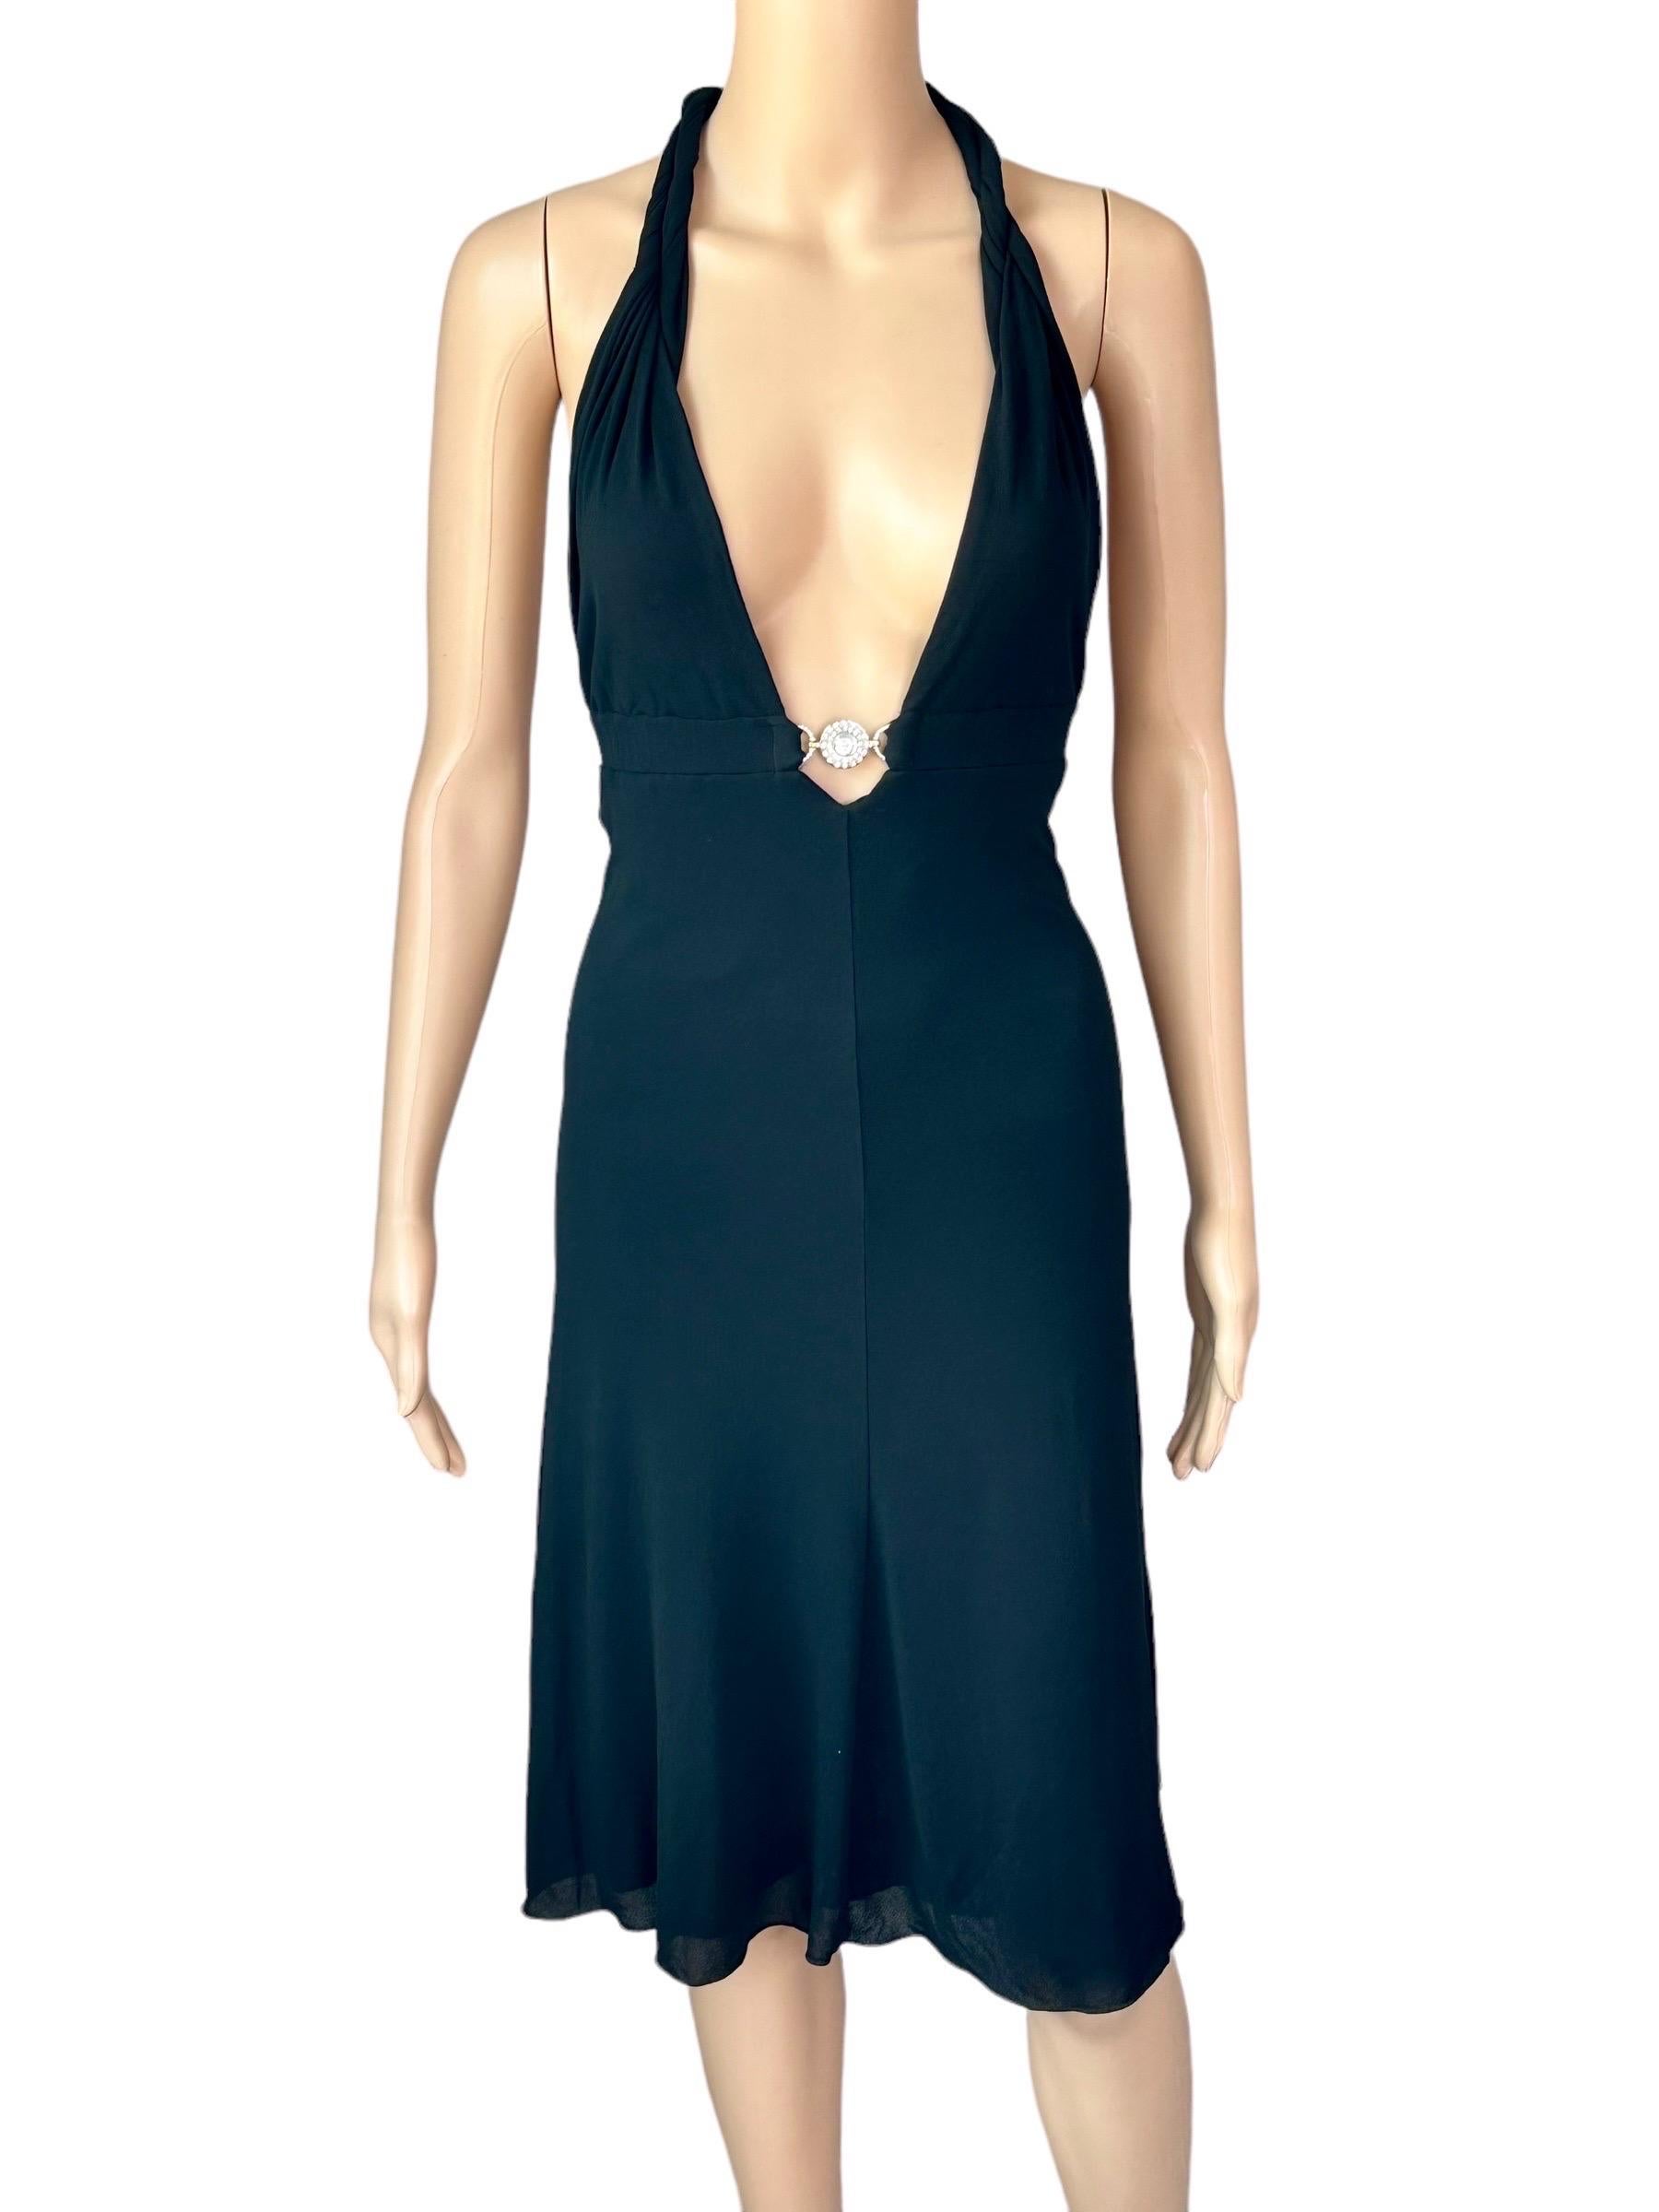 Versace S/S 2007 Crystal Logo Plunging Neckline Backless Halter Black Dress For Sale 1